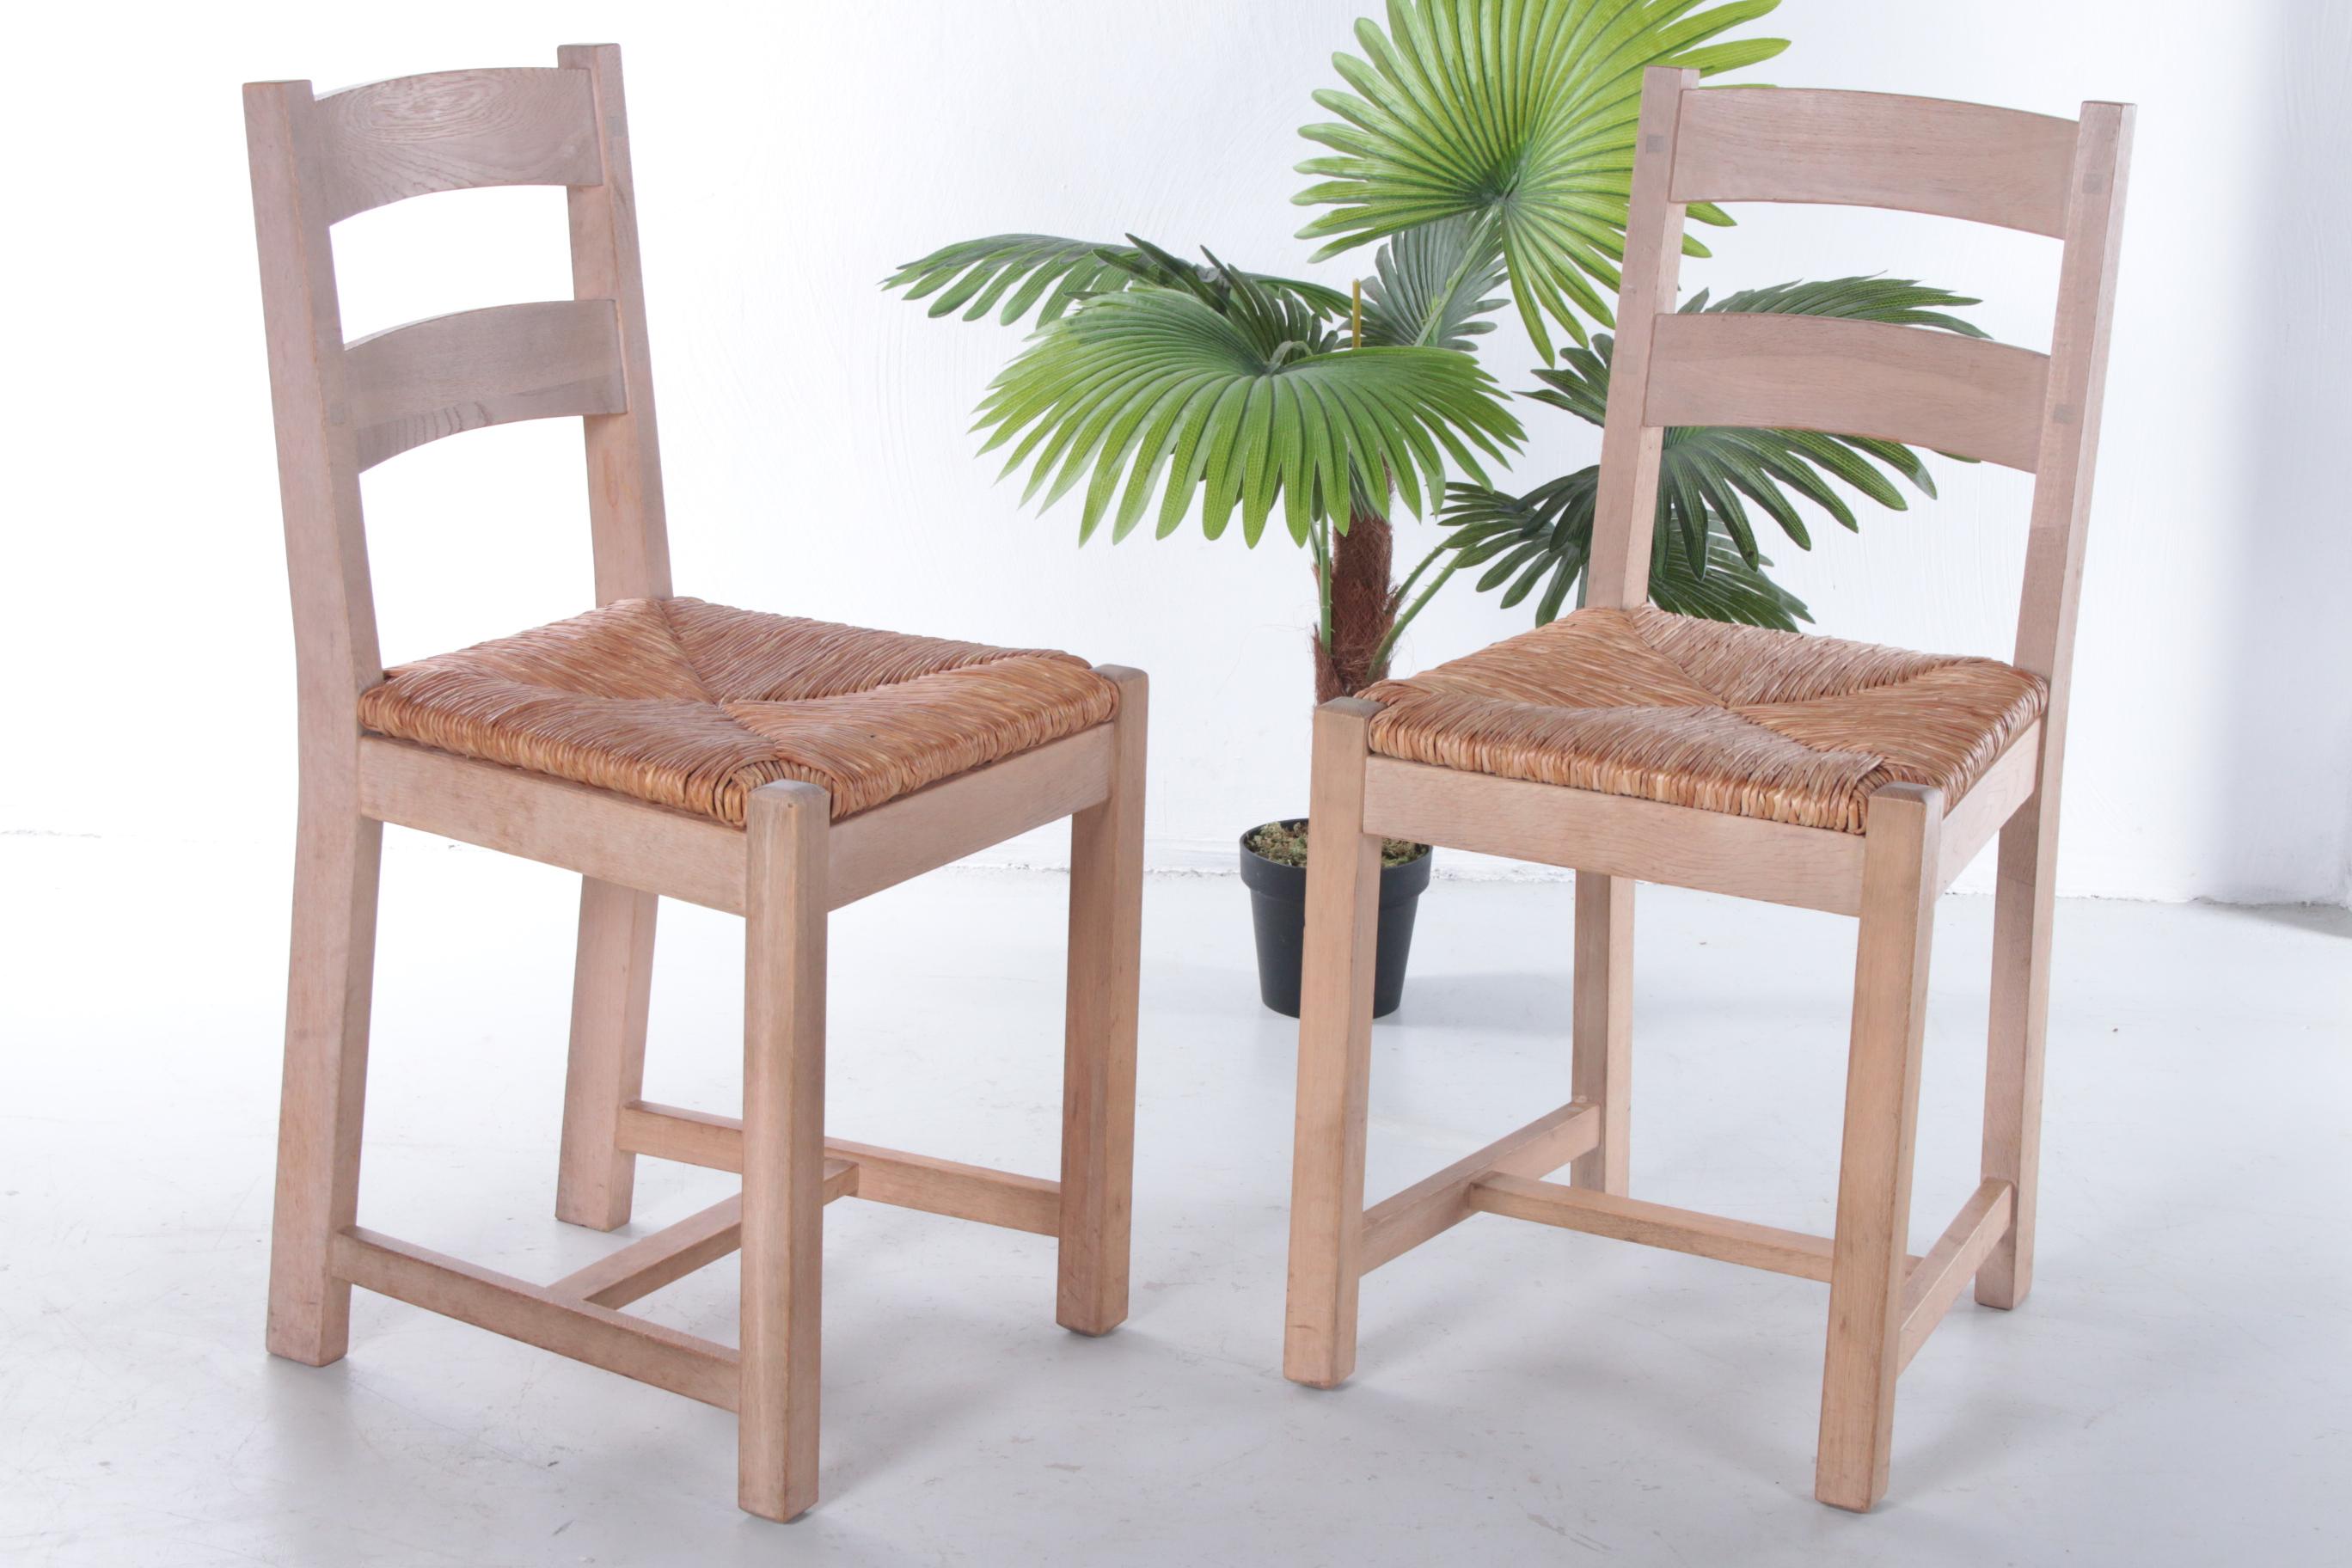 Schöner Satz von 2 dänischen Küchenstühlen aus Eichenholz mit Korbsitz, hergestellt in den 1970er Jahren. 

Die Stühle wurden in Dänemark gekauft und strahlen ebenfalls ein typisch einfaches skandinavisches Design aus, aber der Designer ist uns